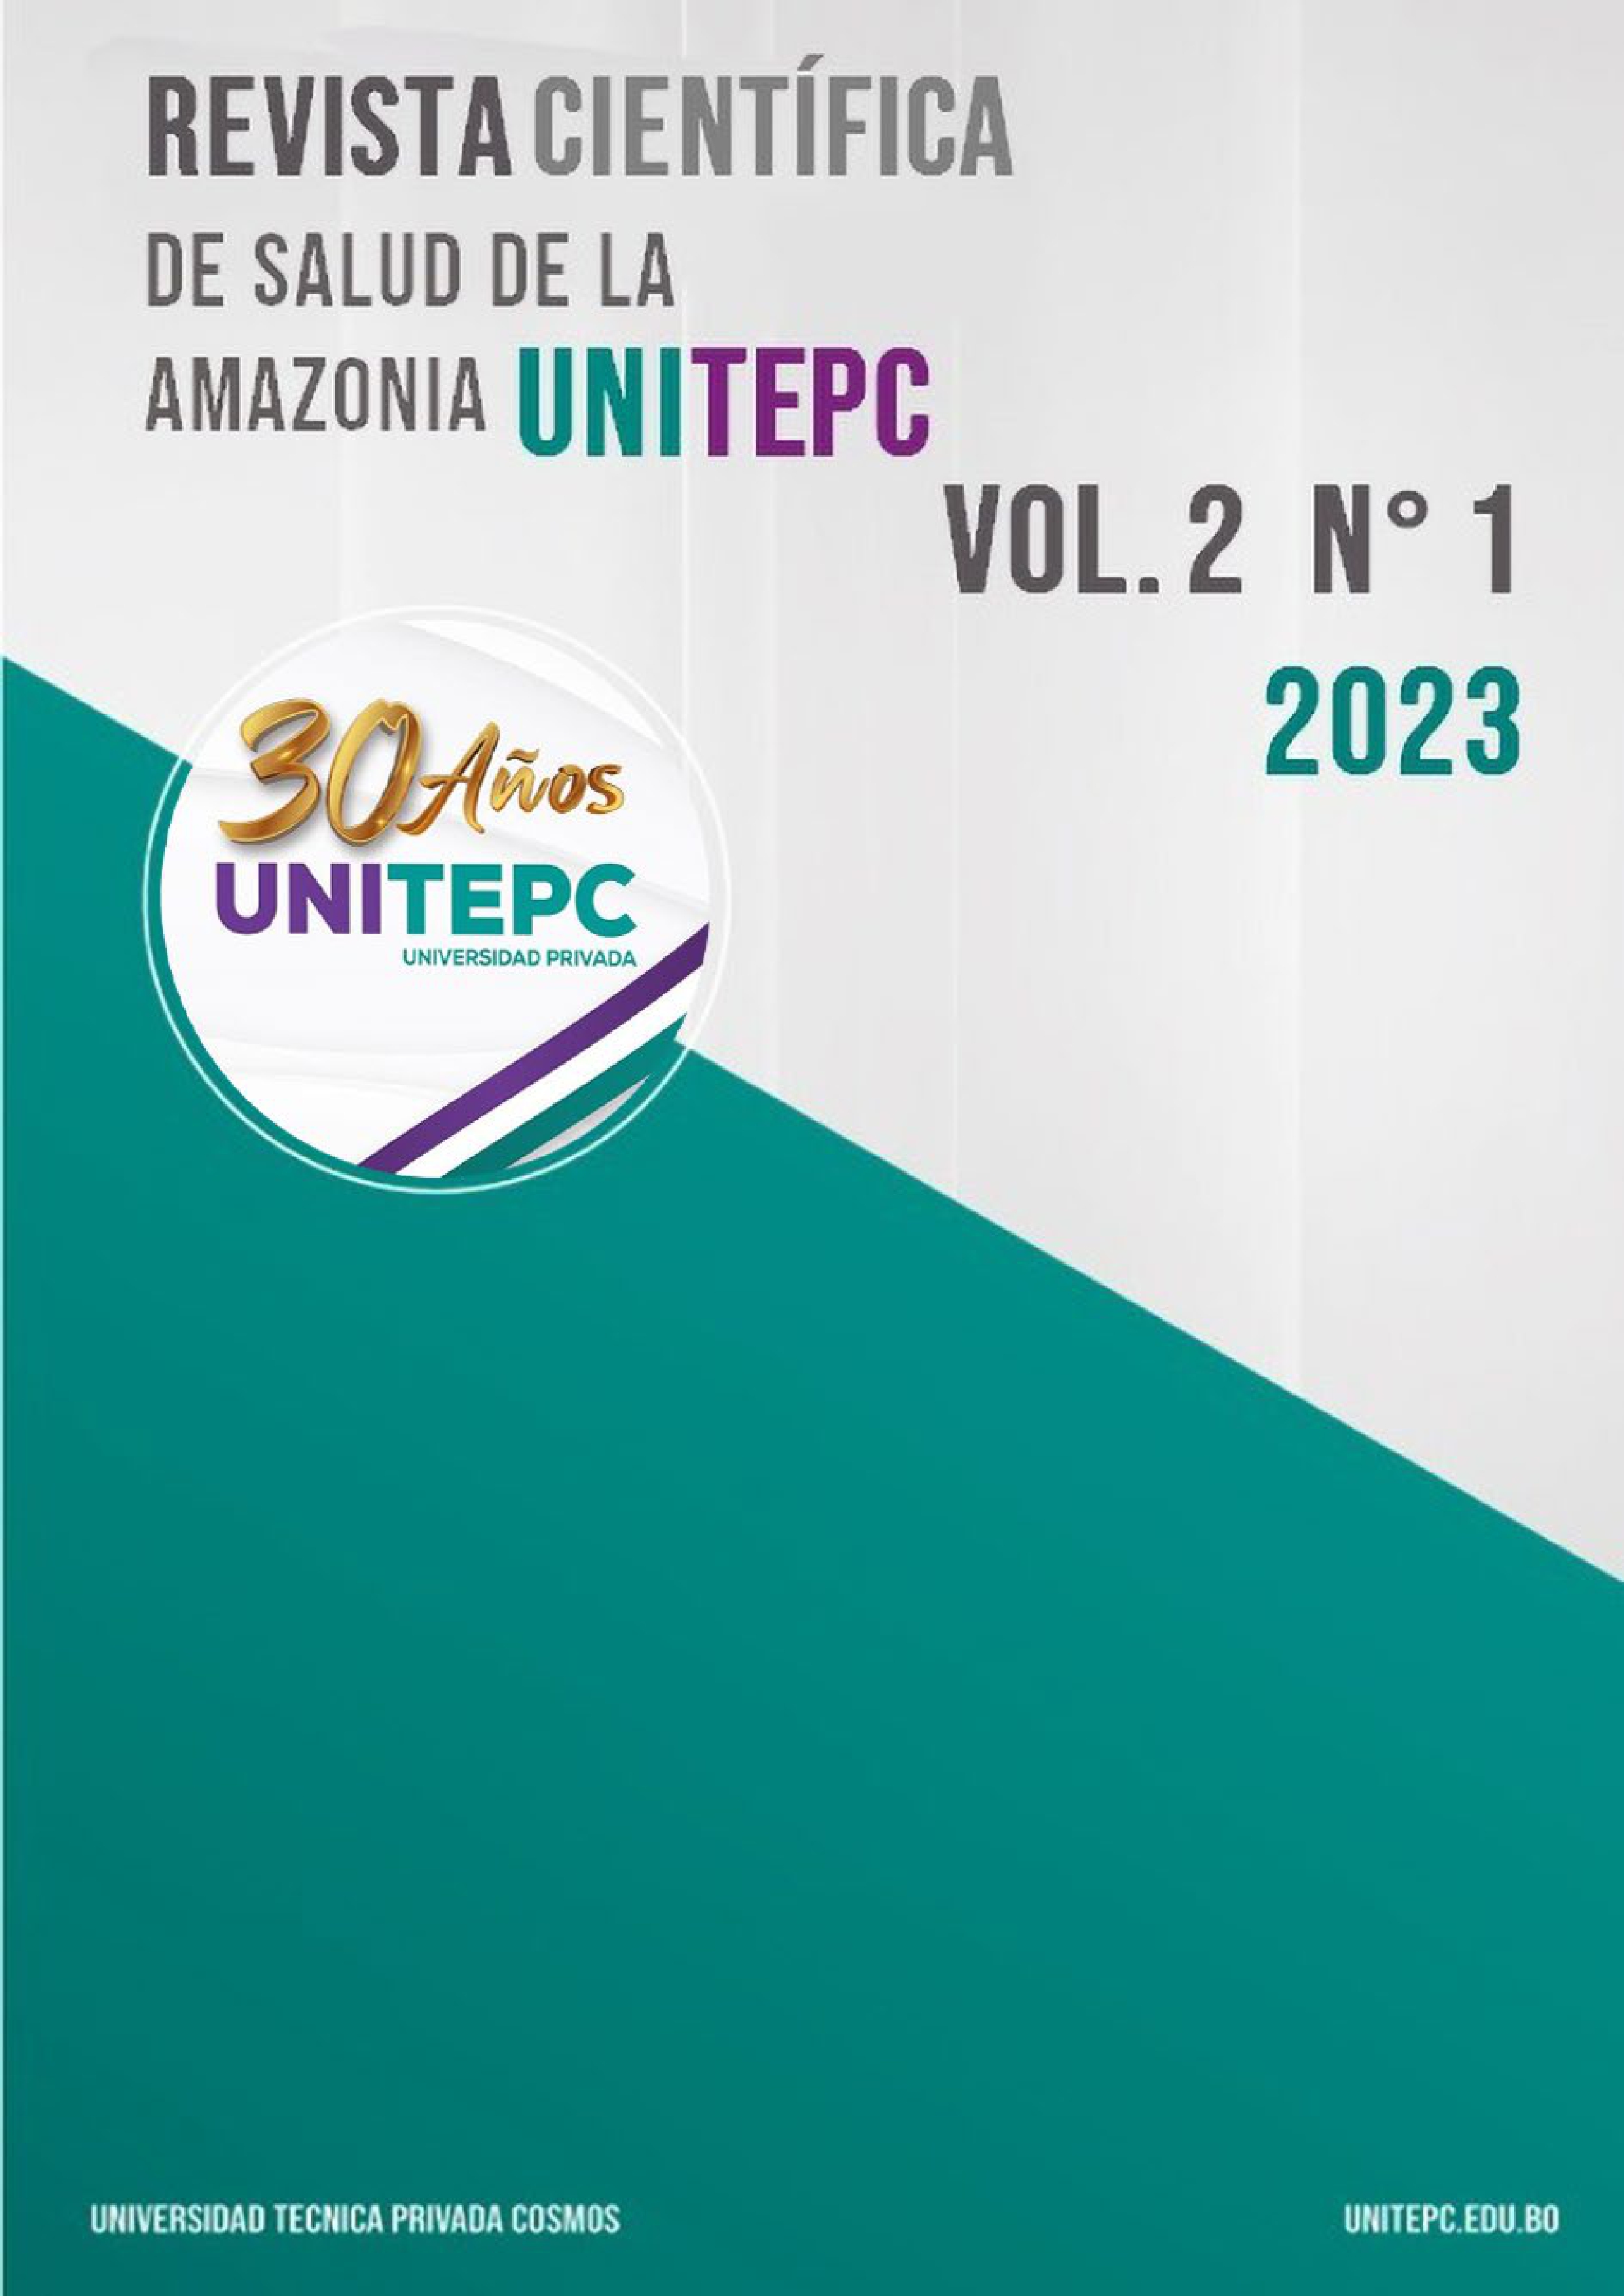 					View Vol. 2 No. 1 (2023): Revista Científica de Salud de la Amazonia UNITEPC
				